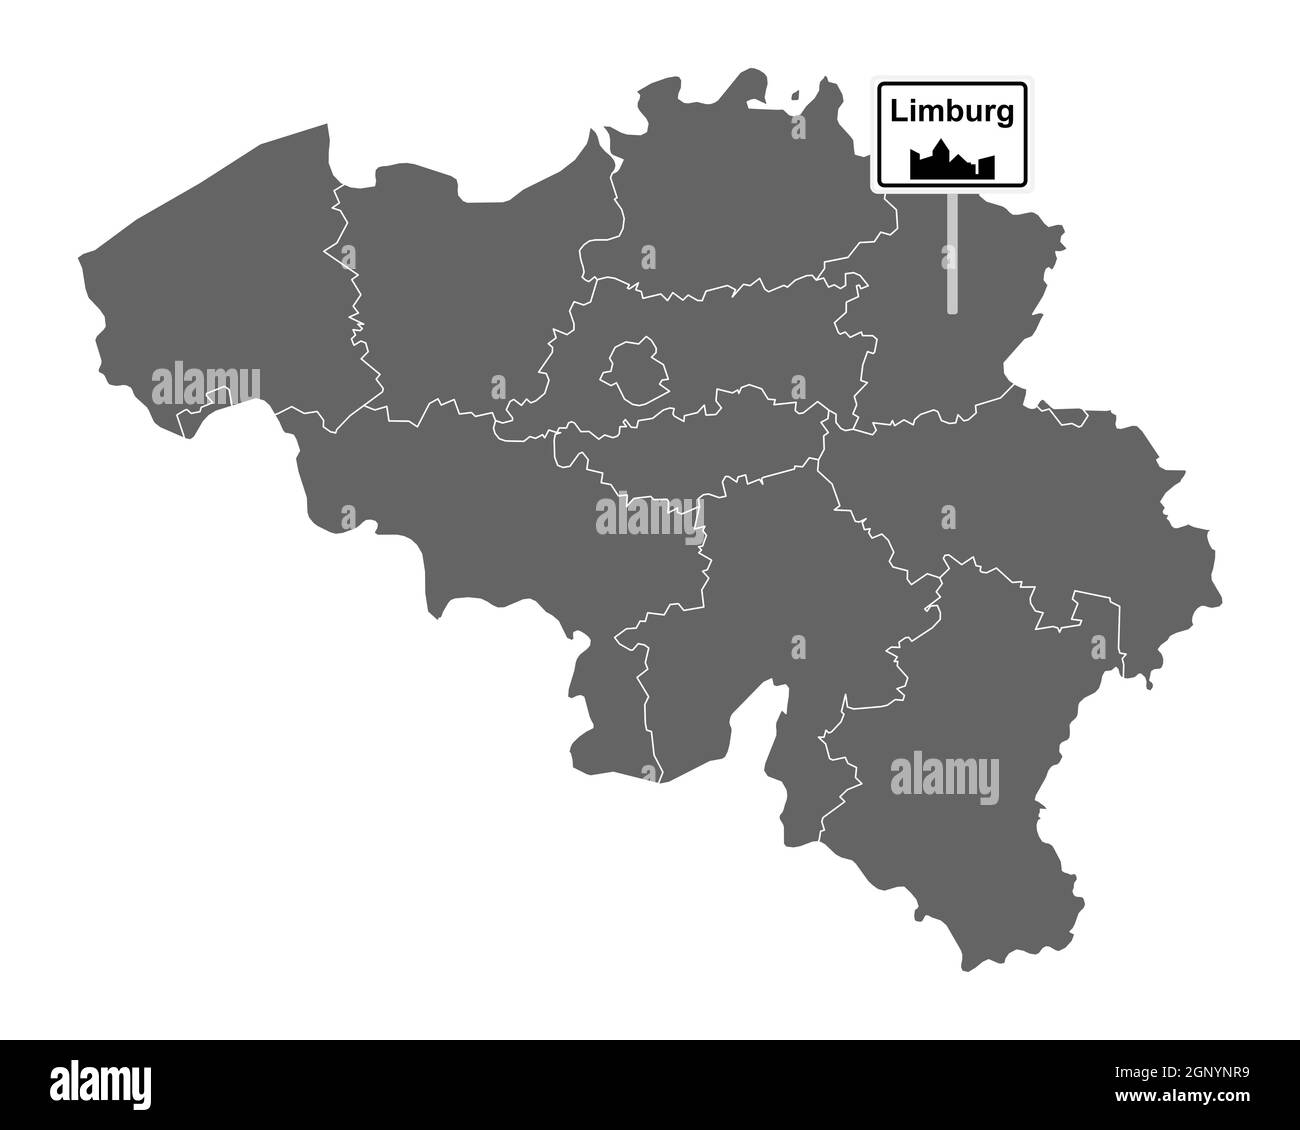 Landkarte von Belgien mit Orstsschild Limburg Stock Photo